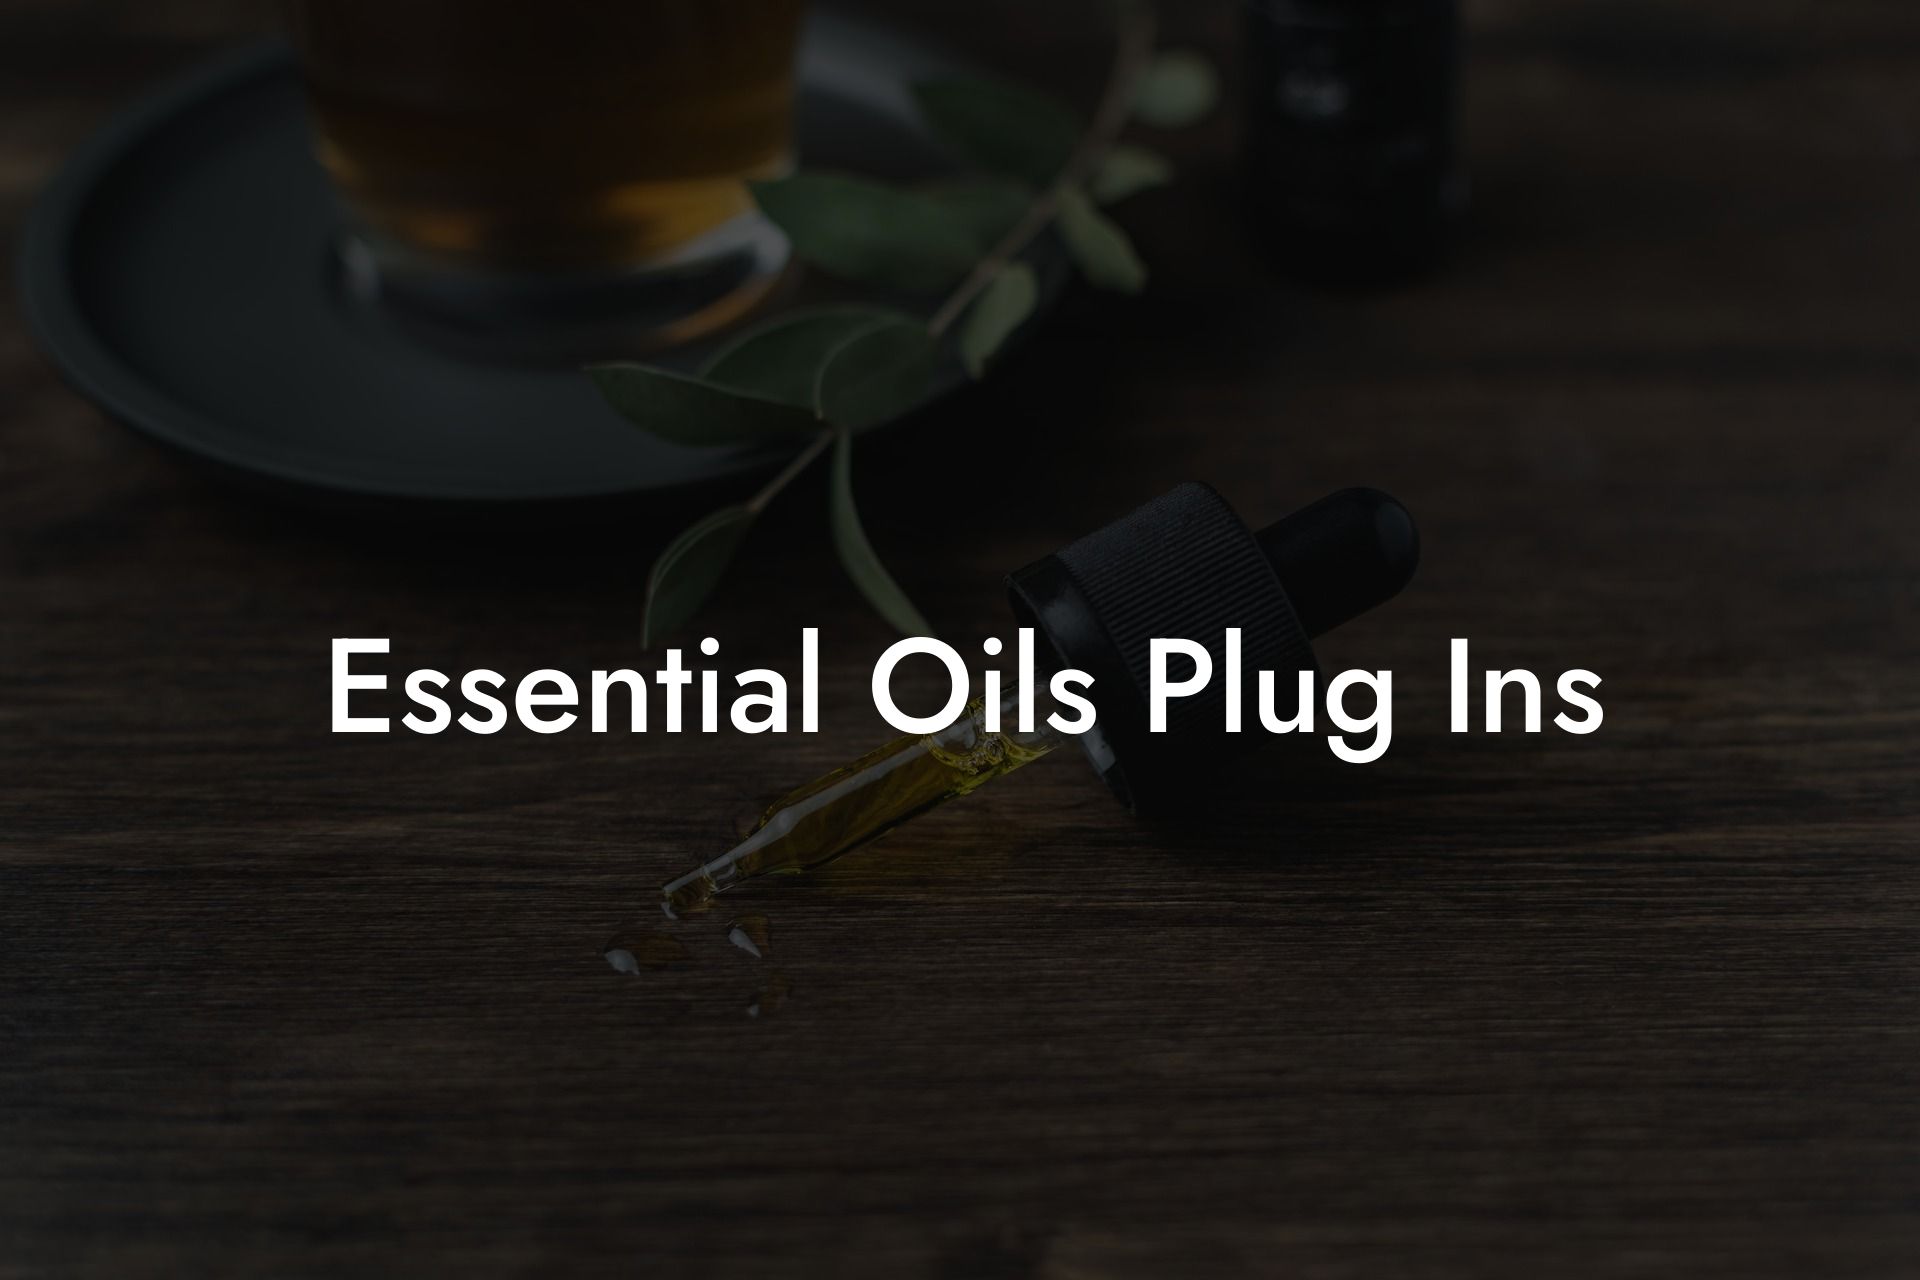 Essential Oils Plug Ins